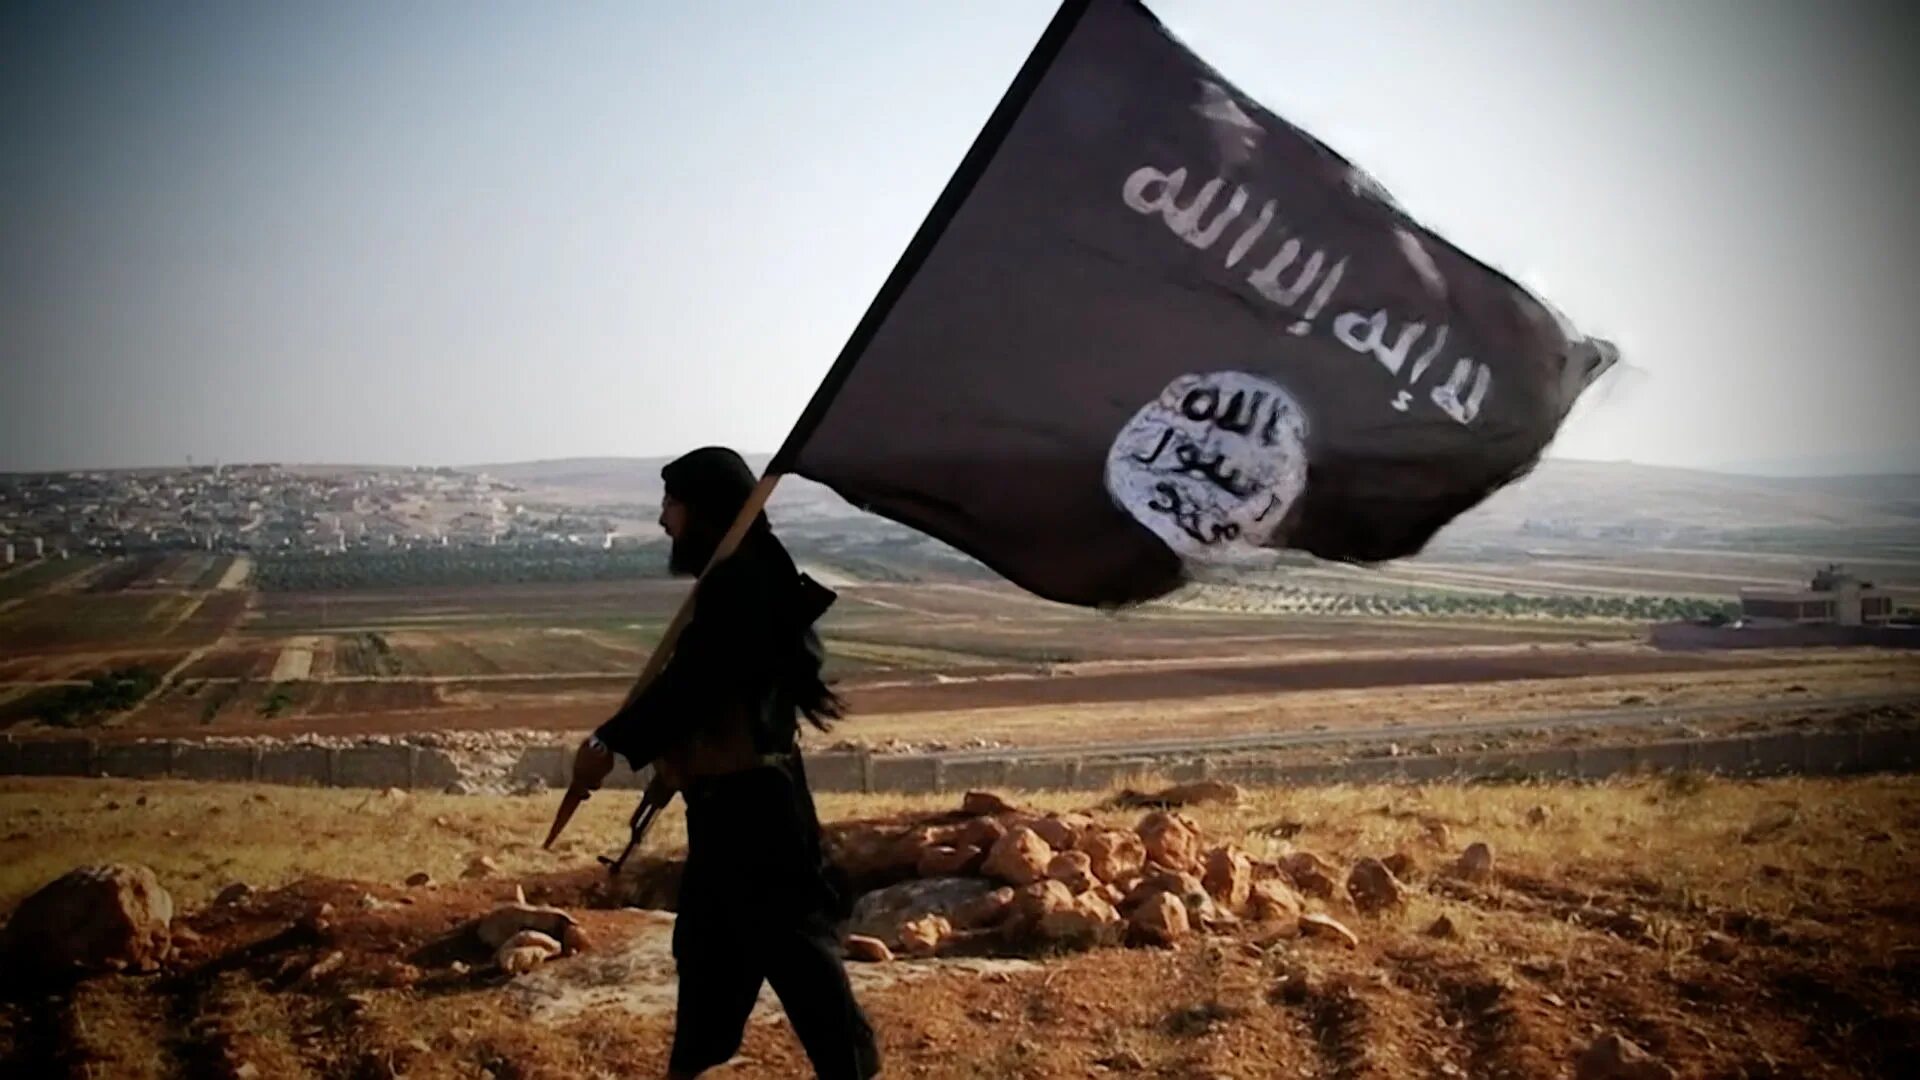 Террористическая организация даешь. Флаг МТО ИГИЛ. Флаг Исламского государства.